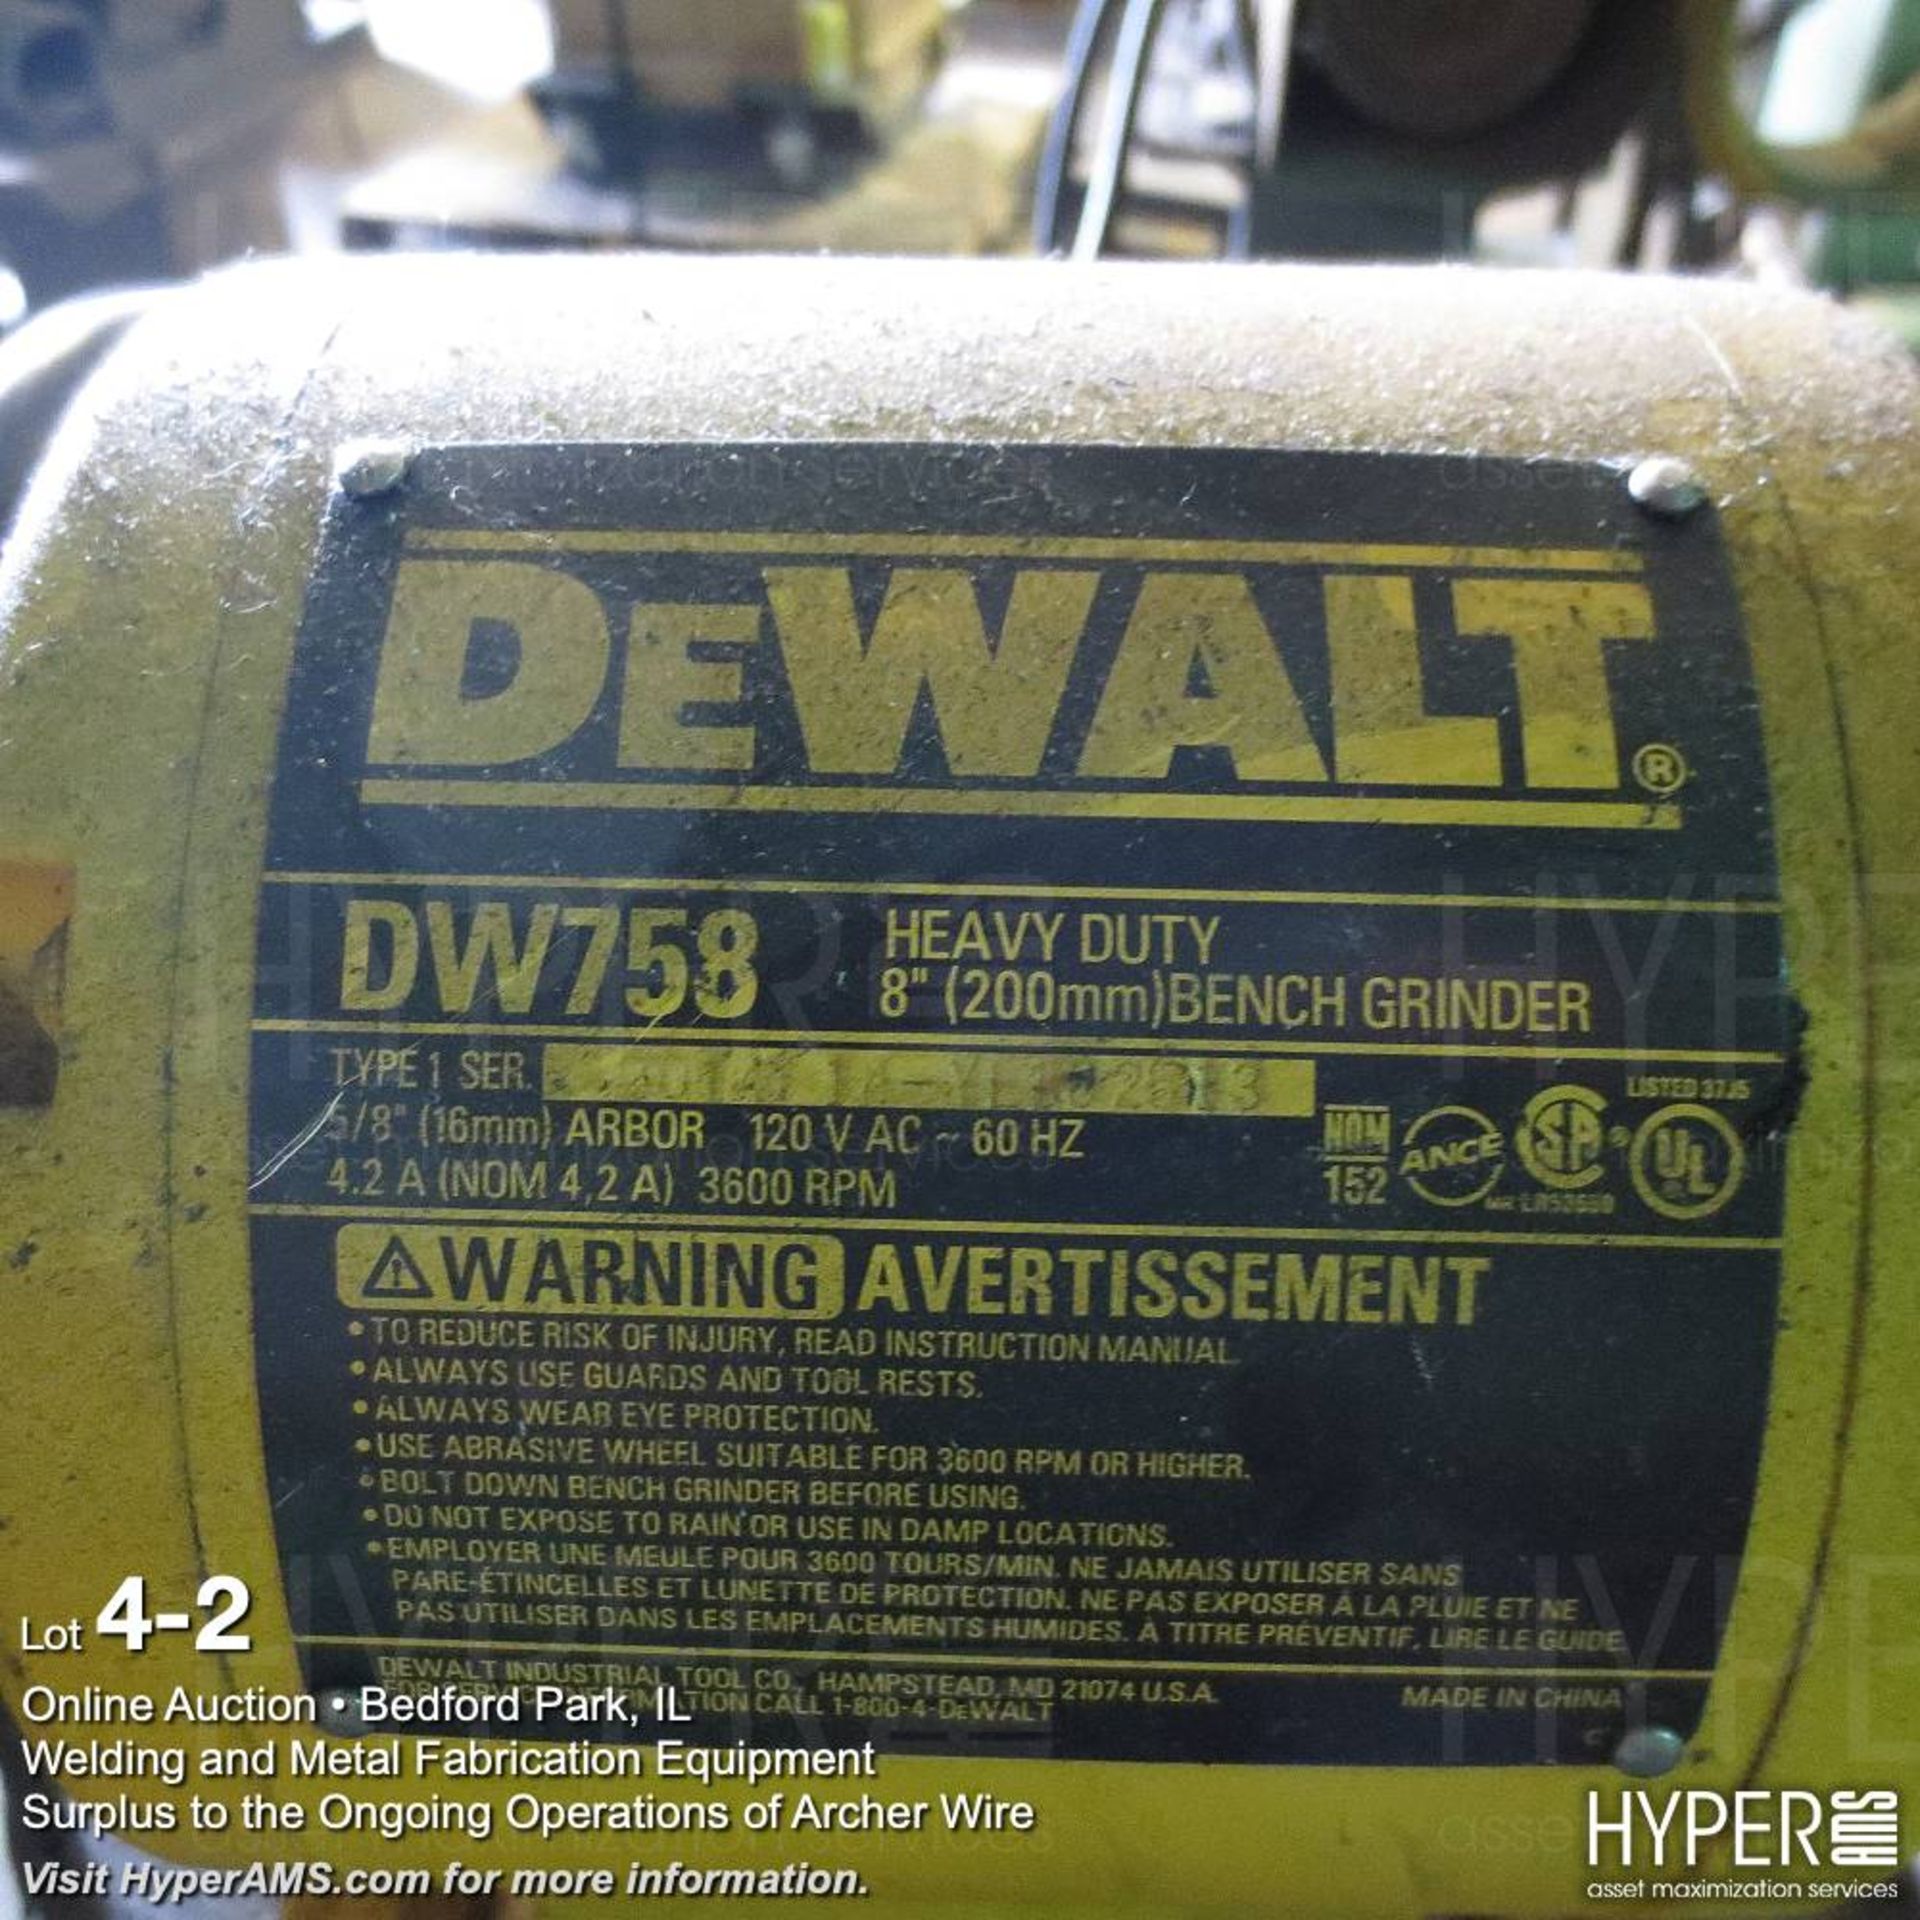 DeWalt 8" DW758 double end bench grinder on pedestal - Image 2 of 3